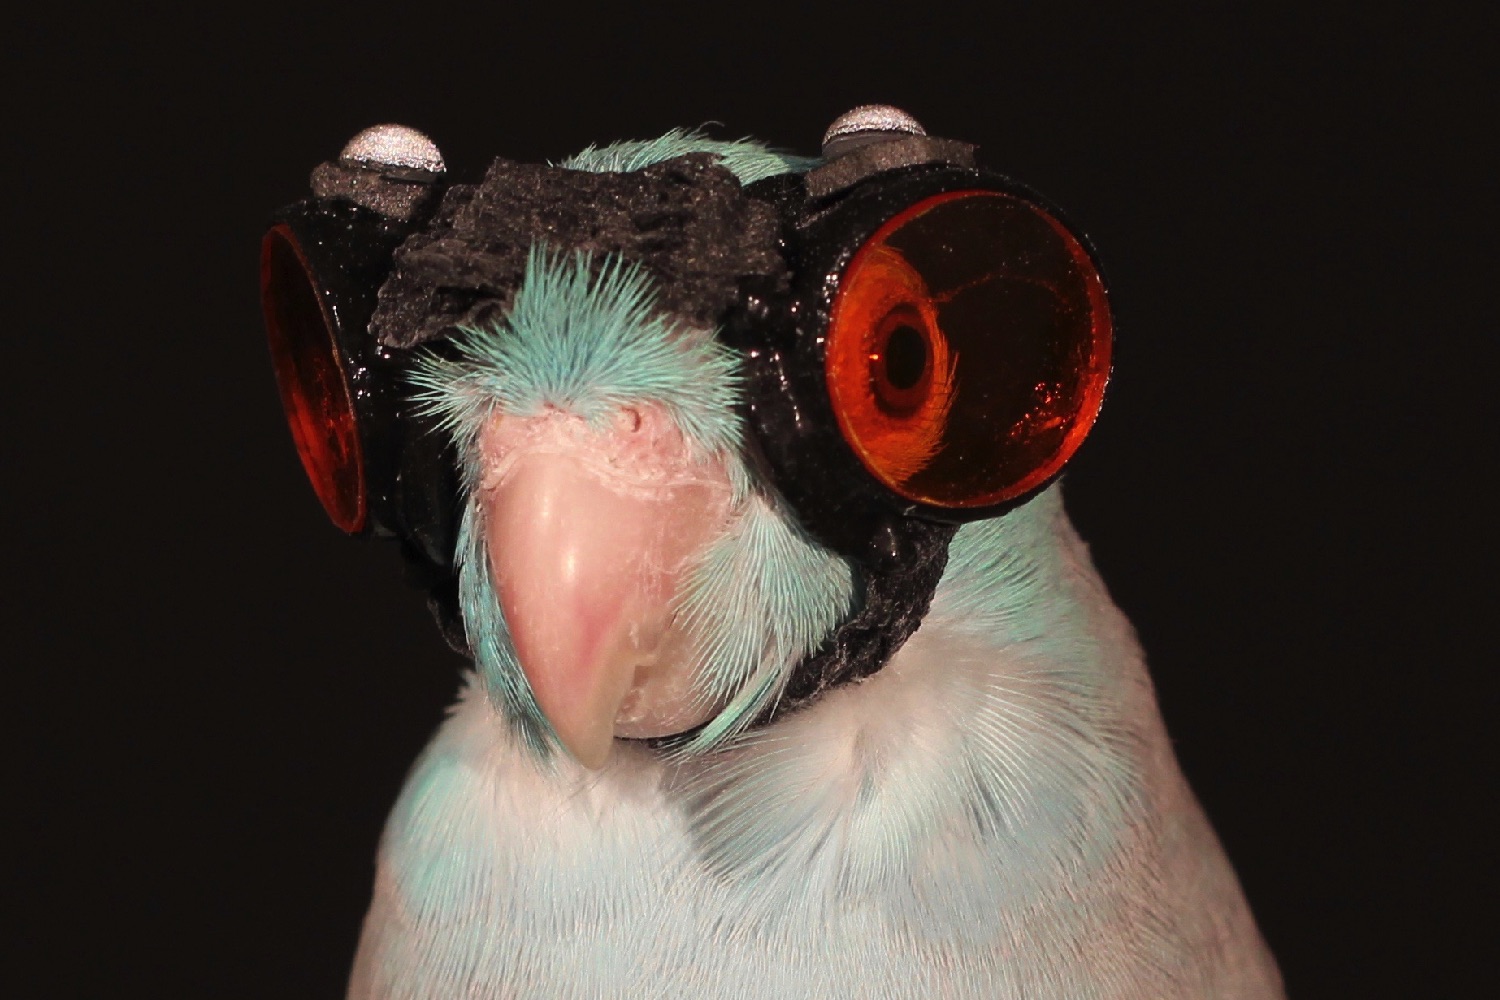 Tại sao các nhà khoa học lại đeo kính bảo hộ cho chim để nghiên cứu về khả năng bay? - Ảnh 3.